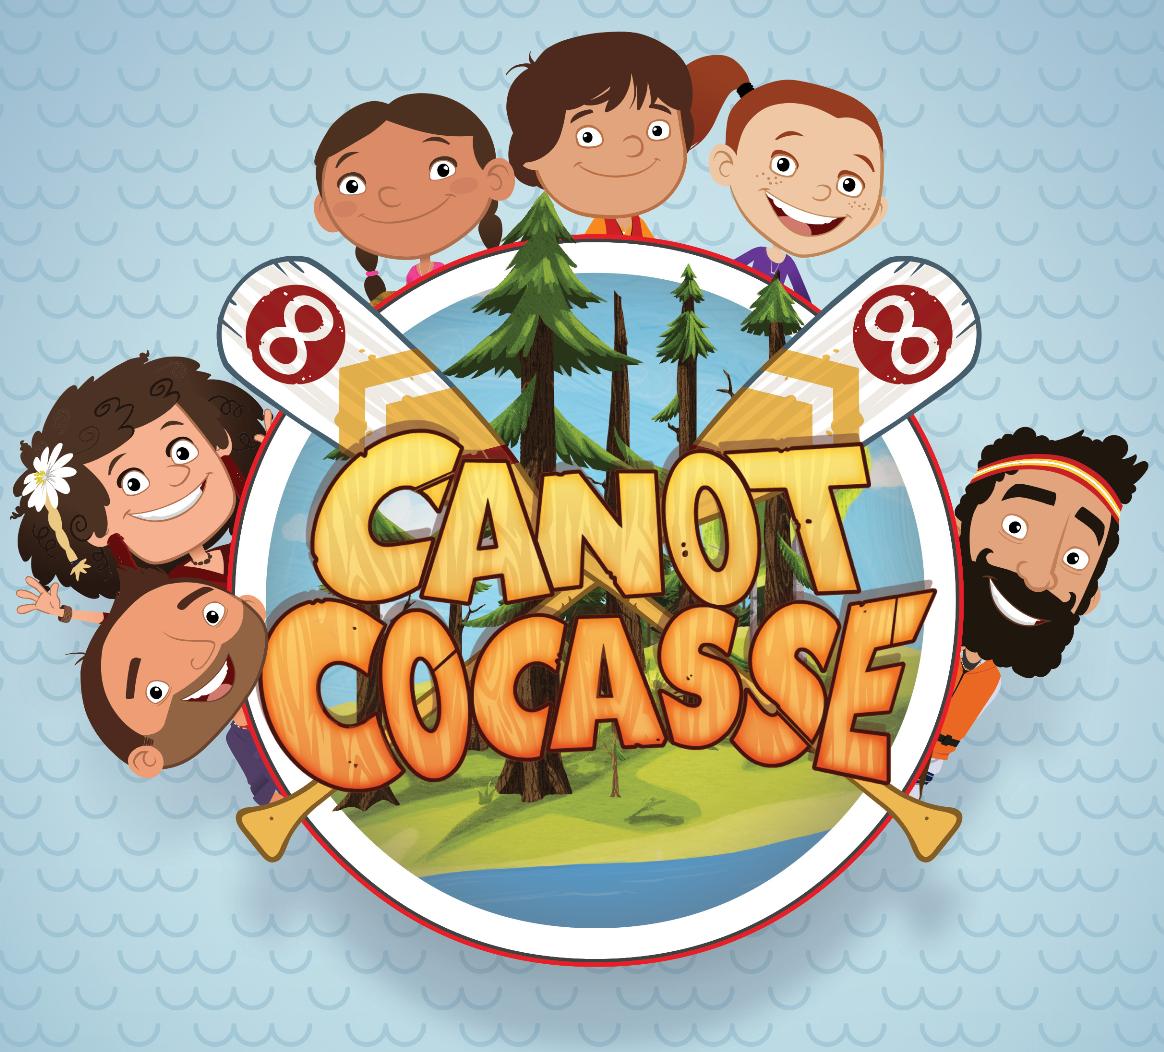 TV ratings for Canot Cocasse in Denmark. APTN TV series